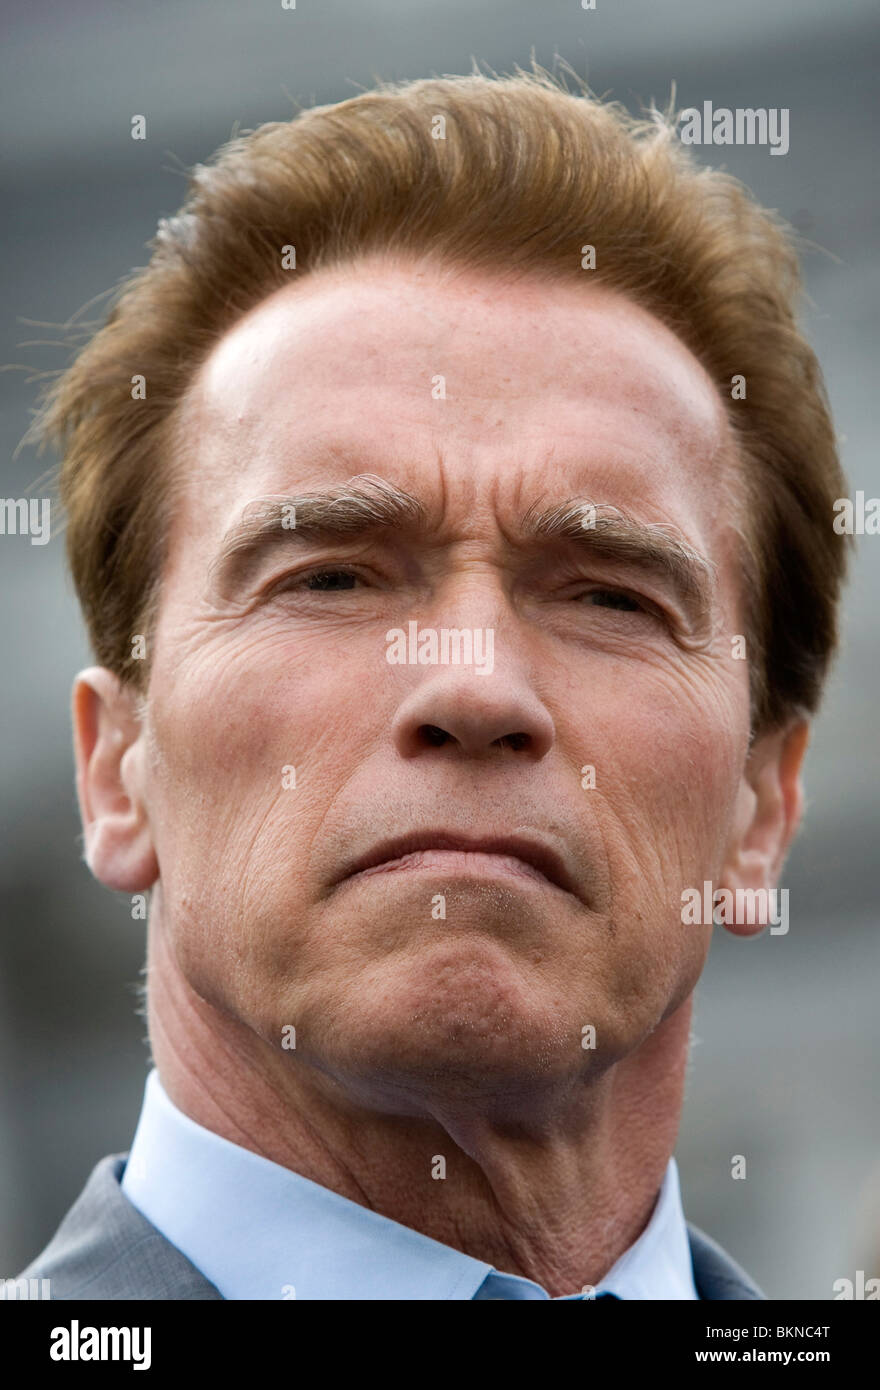 Governor Arnold Schwarzenegger. Stock Photo